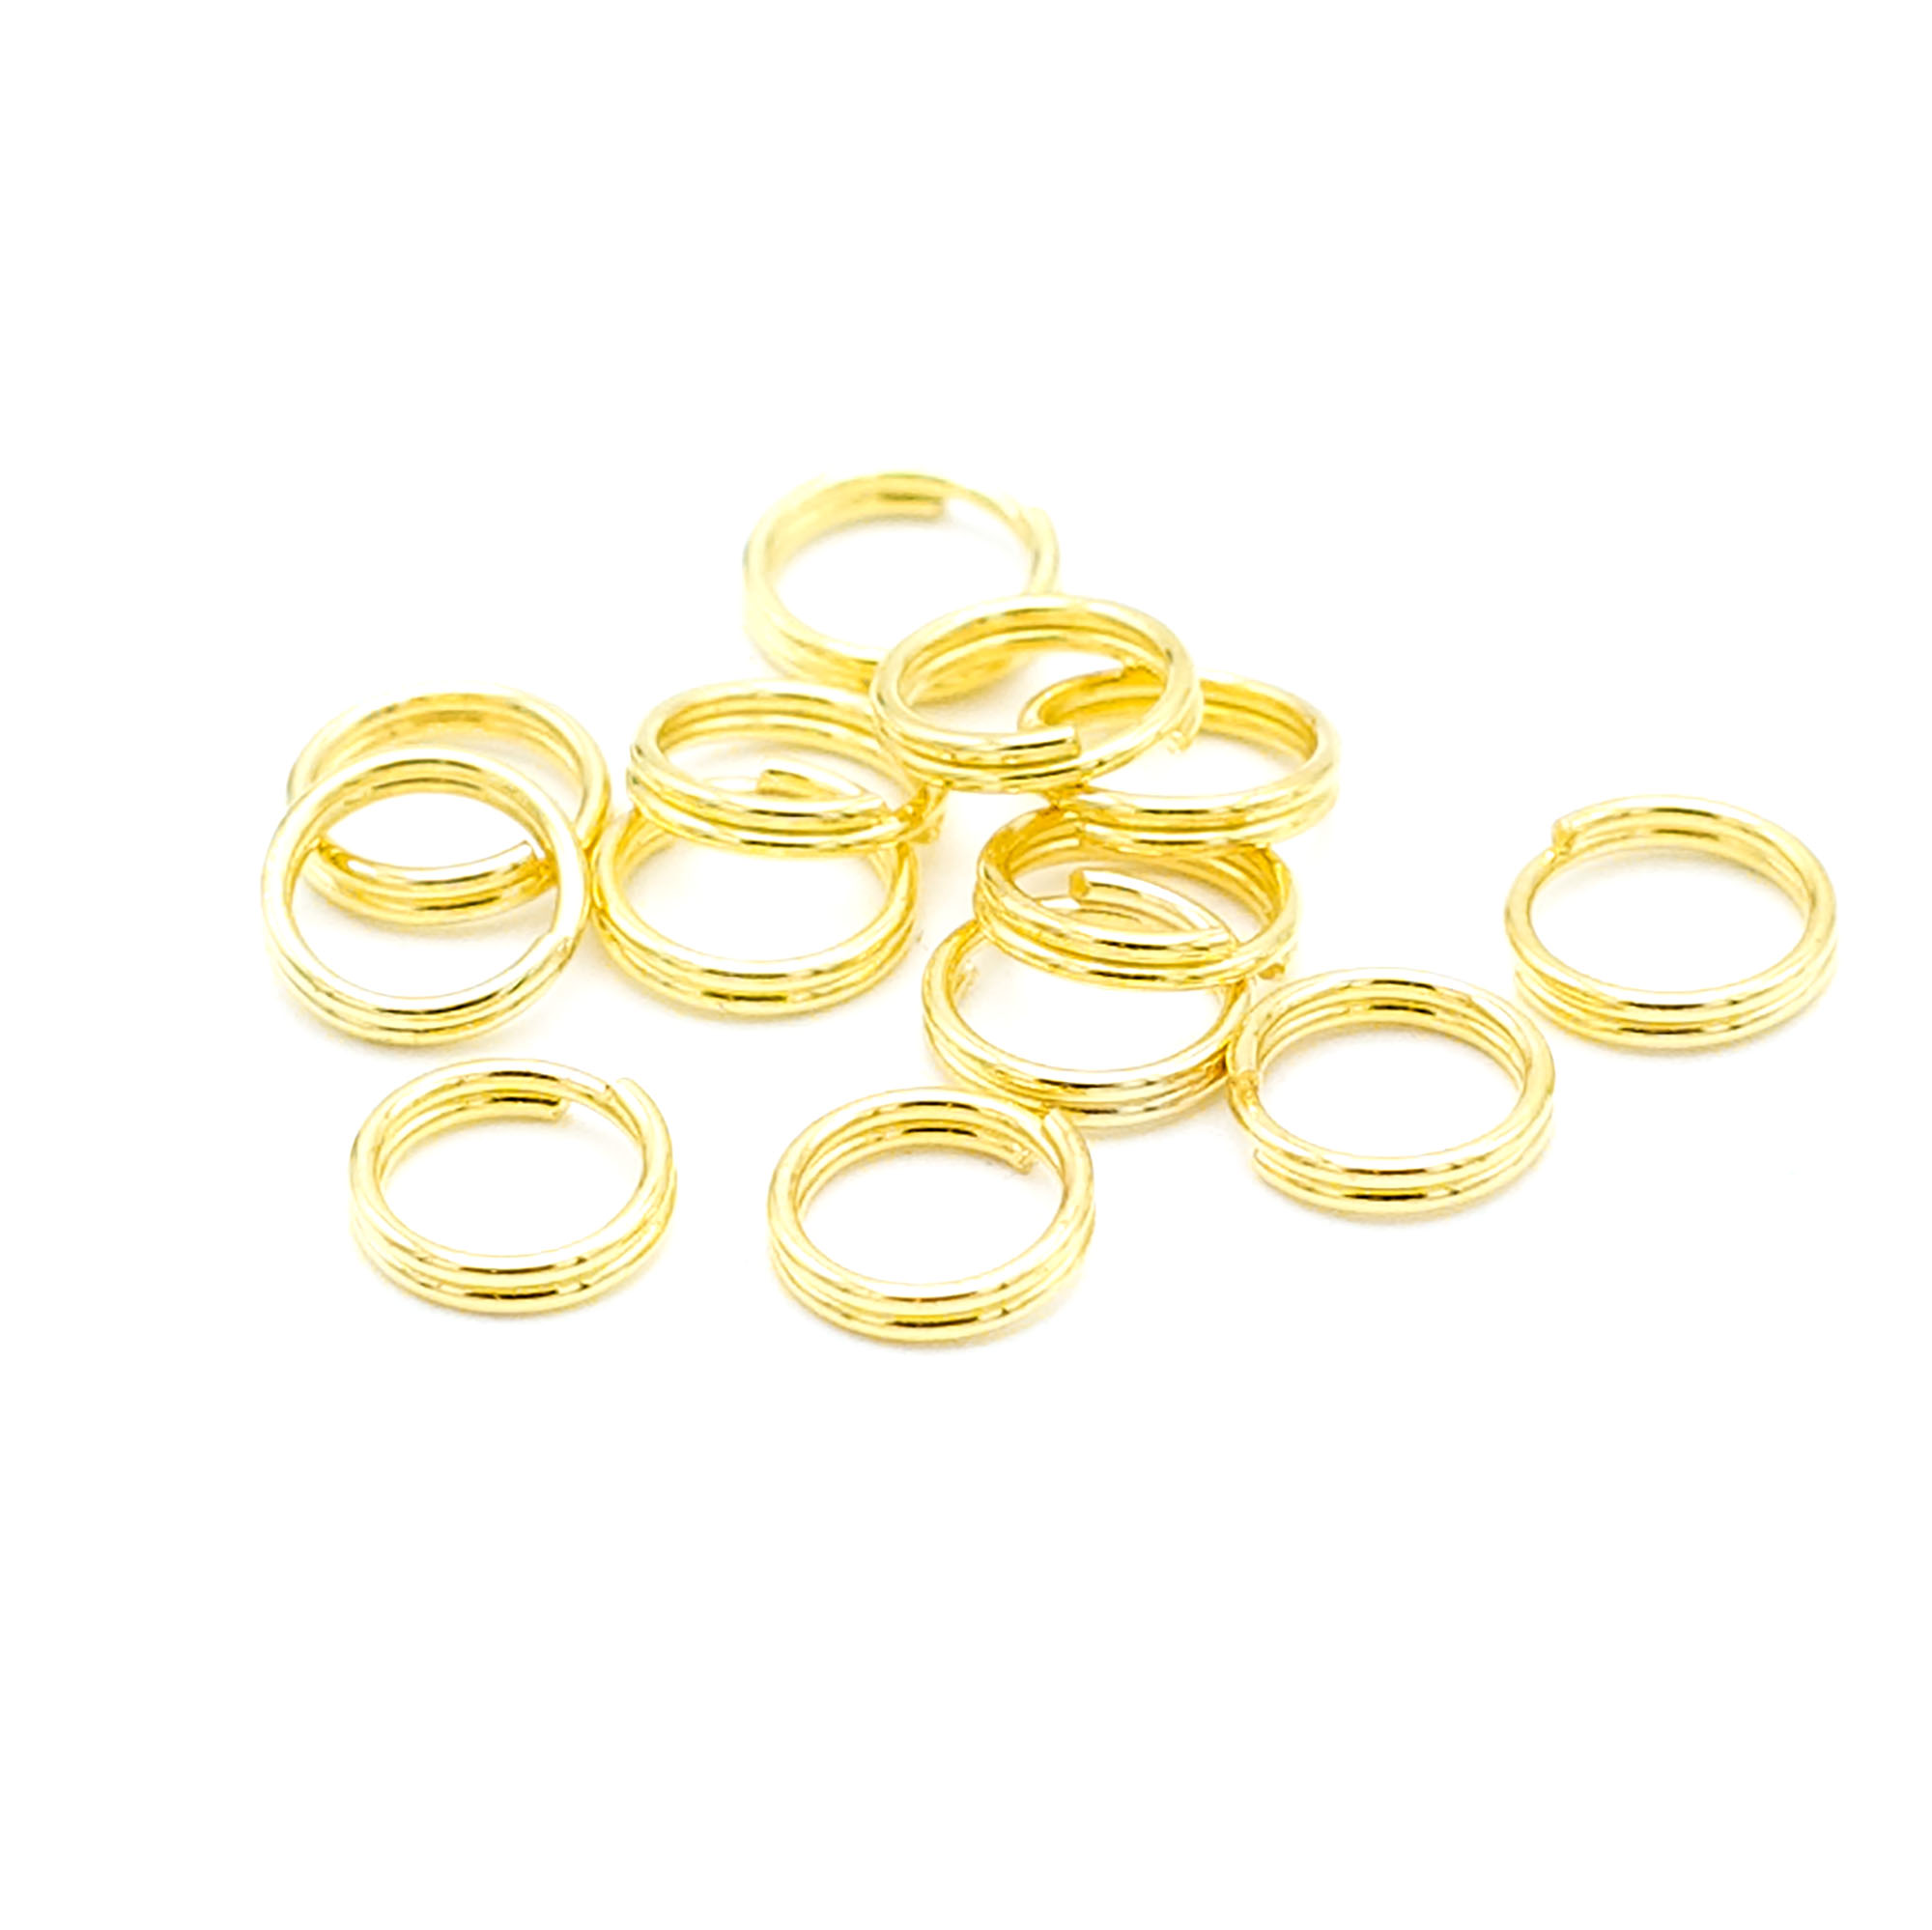 50 anneaux fermés doublés 6 mm, doré